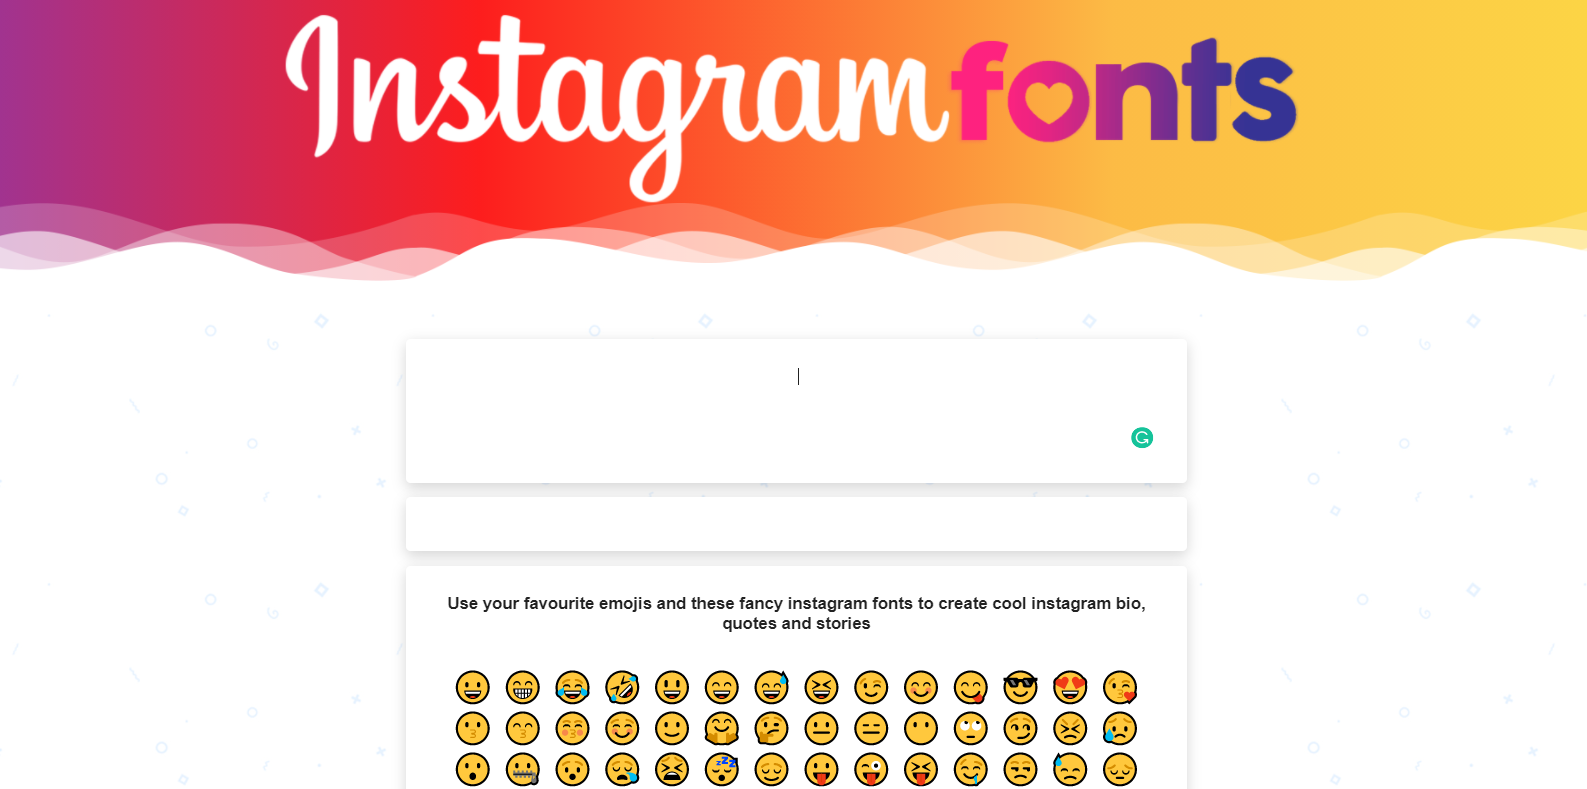 Instagram fonts generator